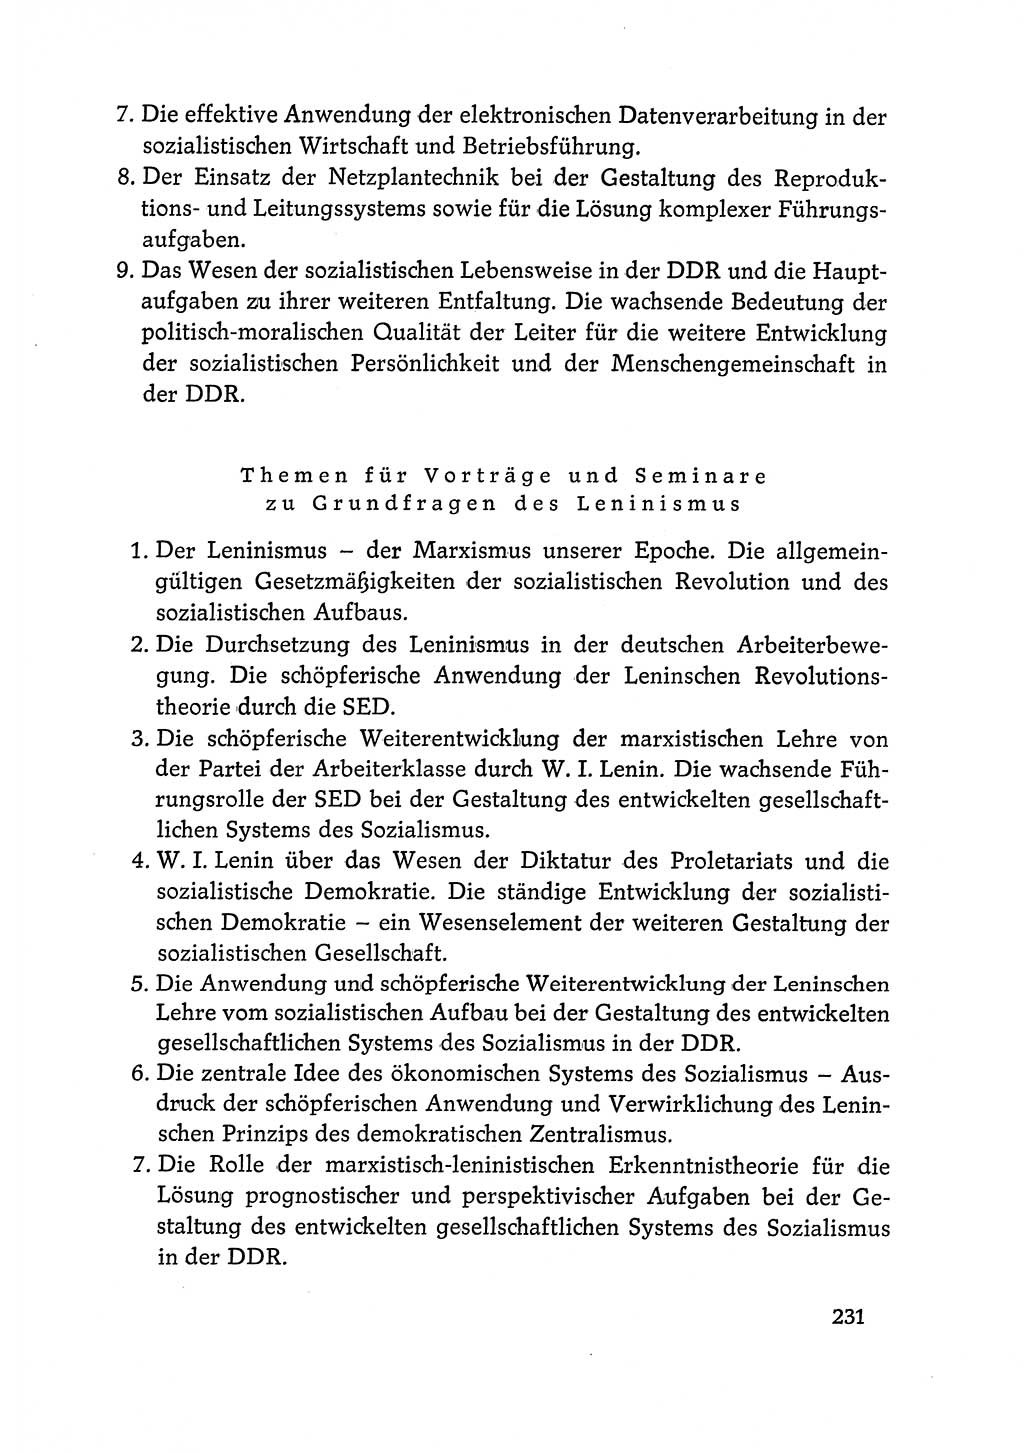 Dokumente der Sozialistischen Einheitspartei Deutschlands (SED) [Deutsche Demokratische Republik (DDR)] 1968-1969, Seite 231 (Dok. SED DDR 1968-1969, S. 231)